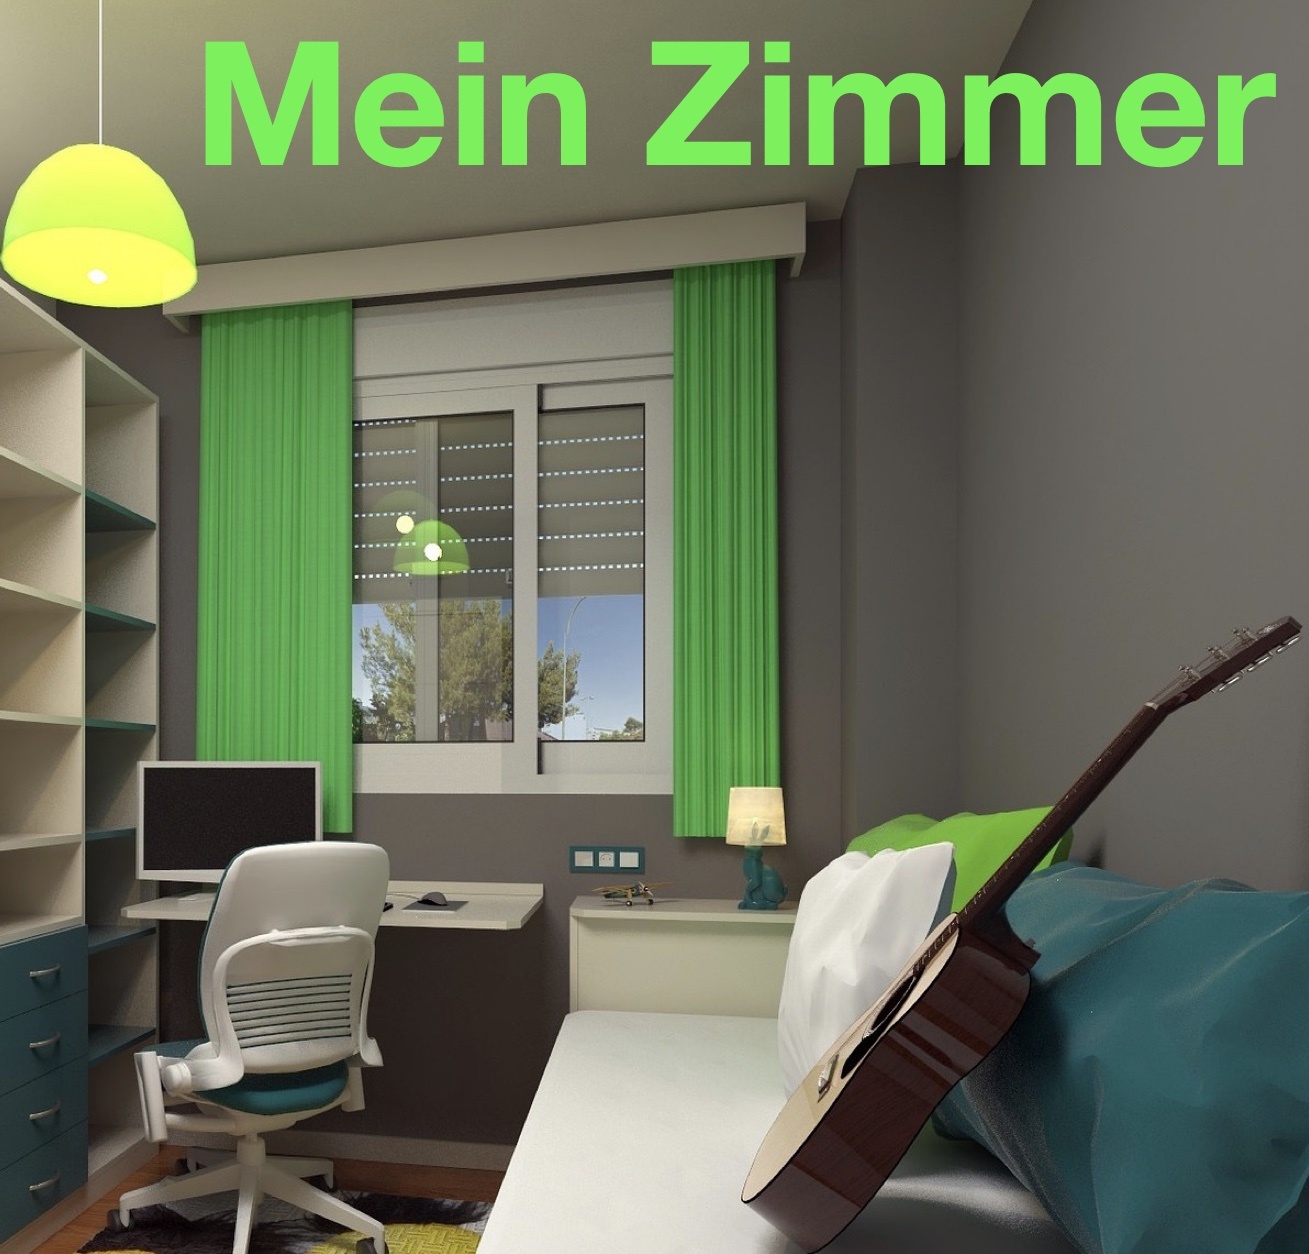 Mein_ZImmer6yc52.jpg